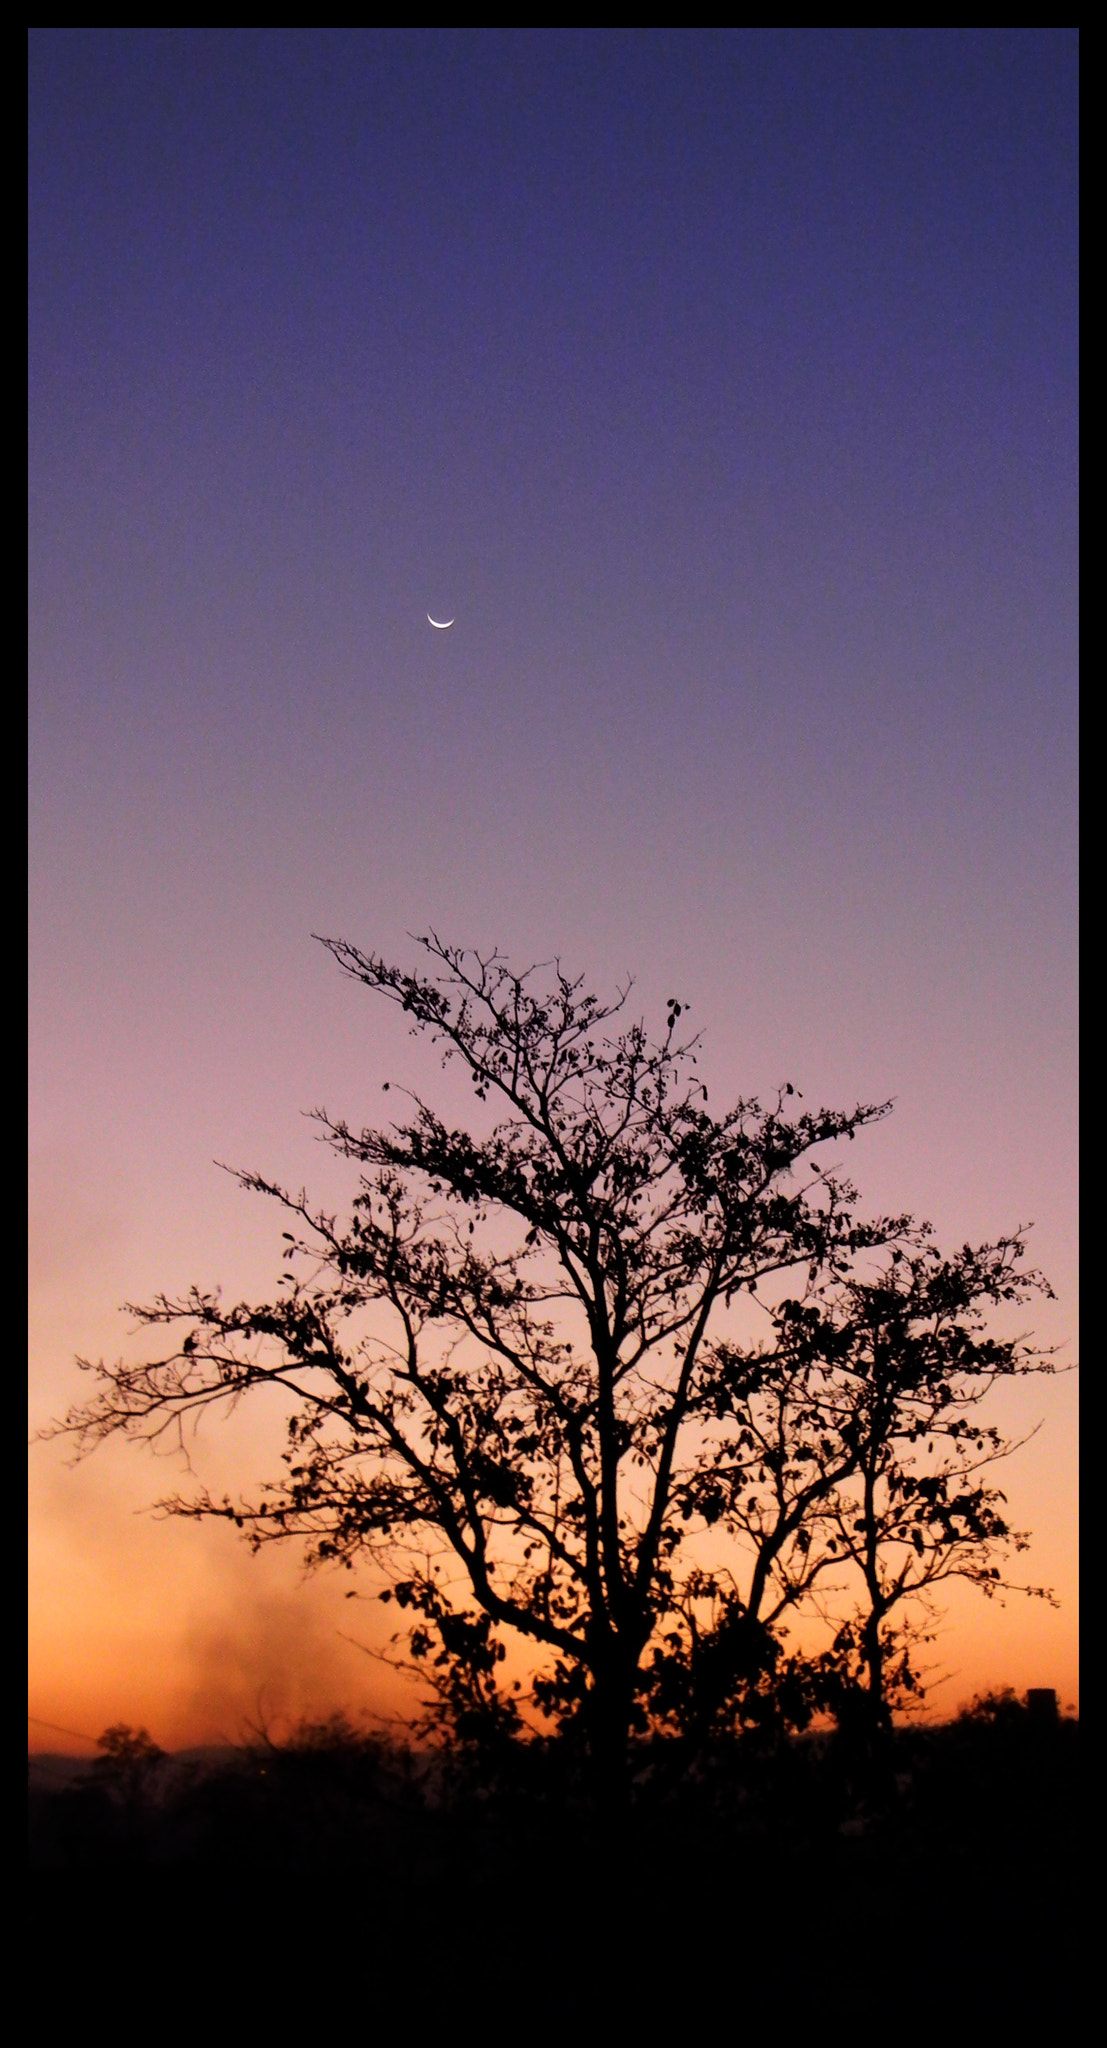 Nikon Coolpix L110 sample photo. Evening sky photography